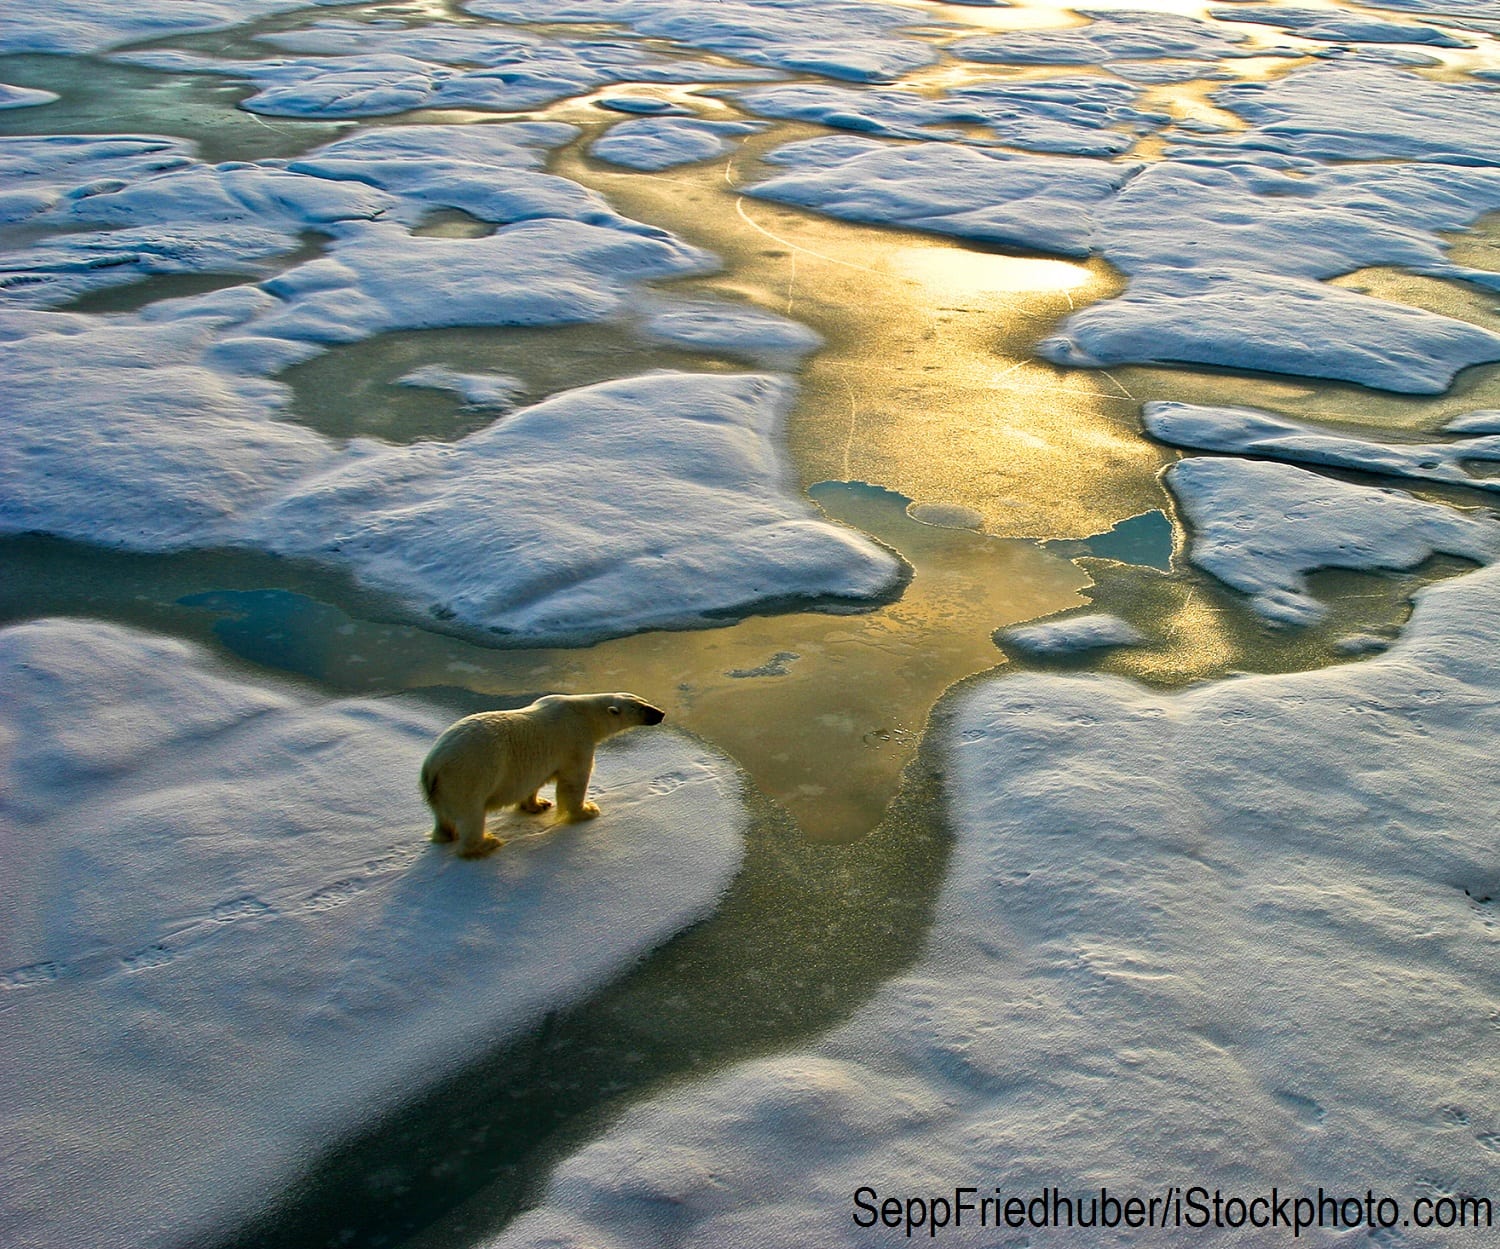 A polar bear on a melting ice cap in the Arctic.